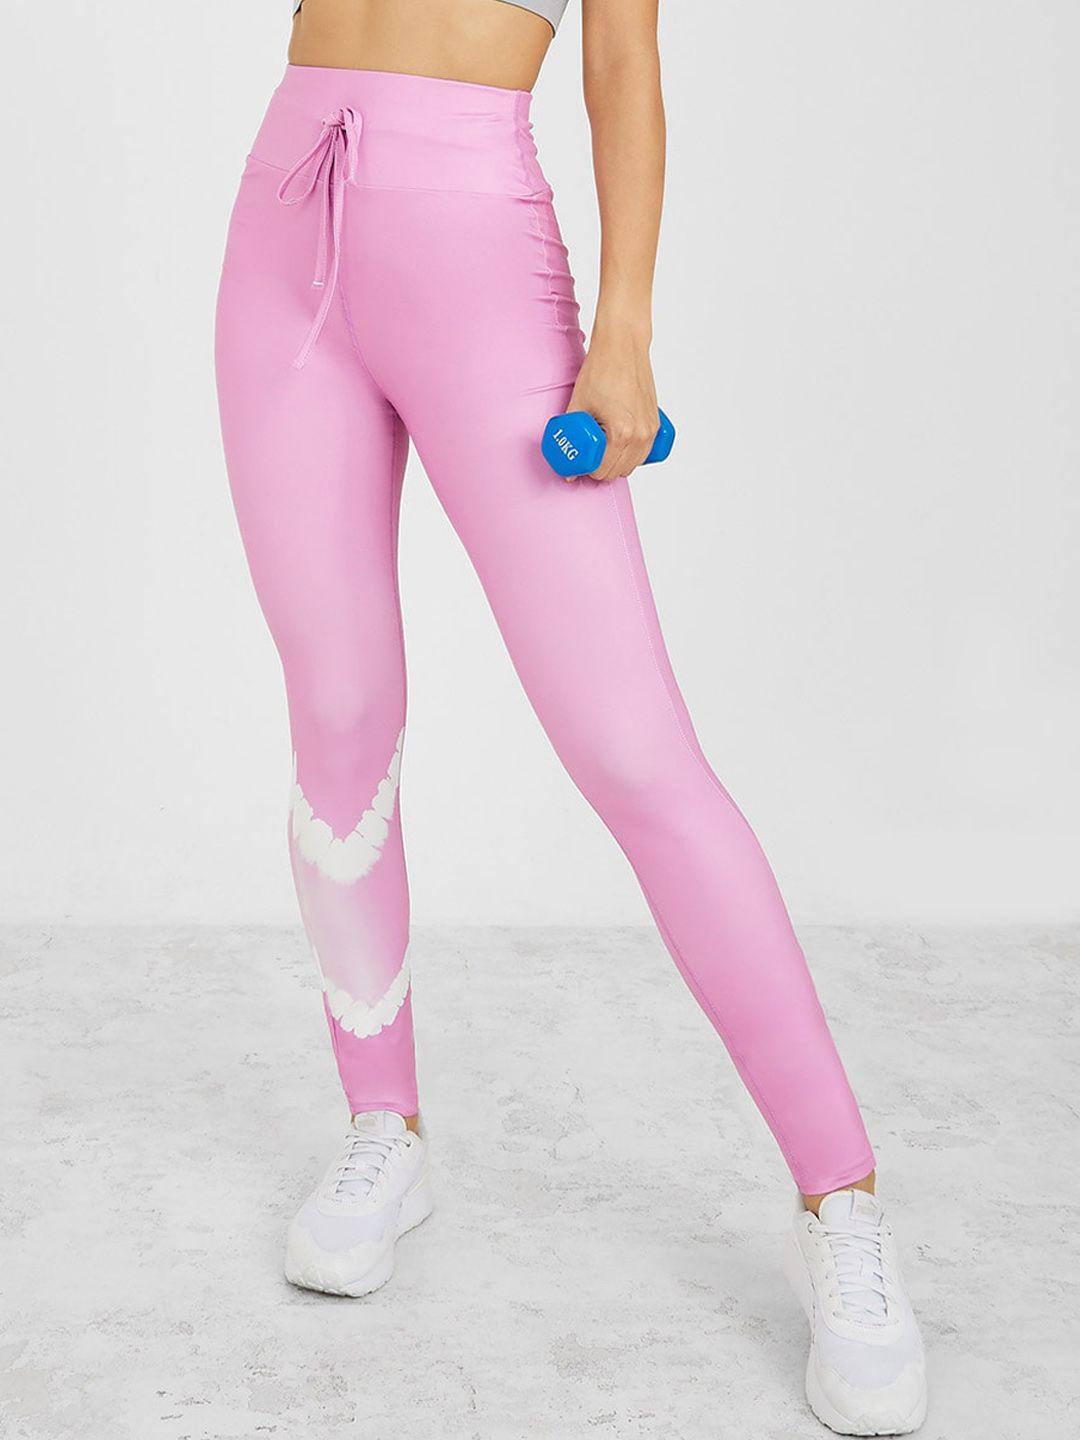 styli-women-pink-colourblocked--tights